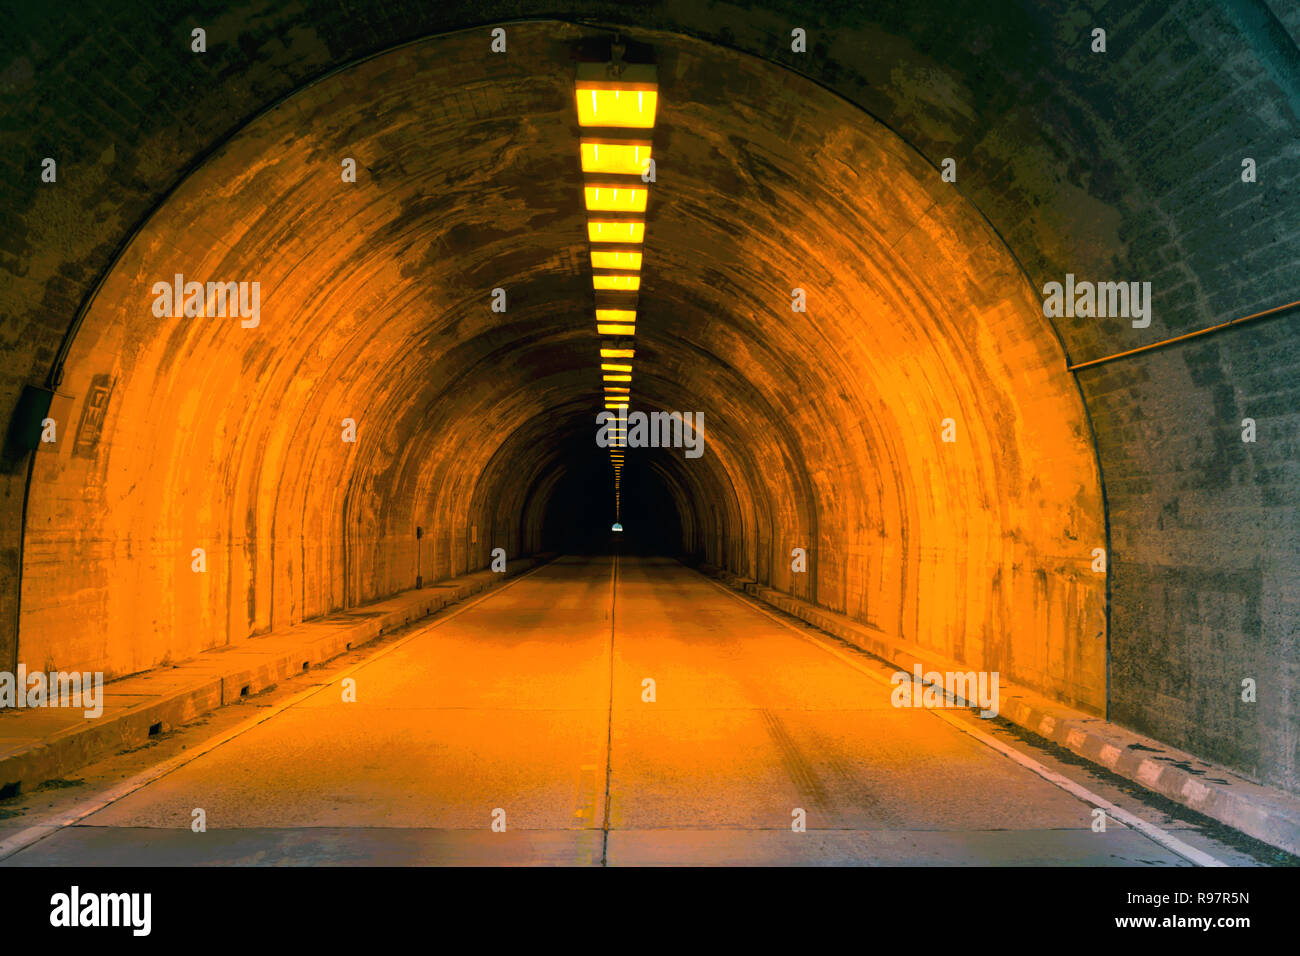 Tunnel de la rue éclairée, la lumière au bout du tunnel Banque D'Images